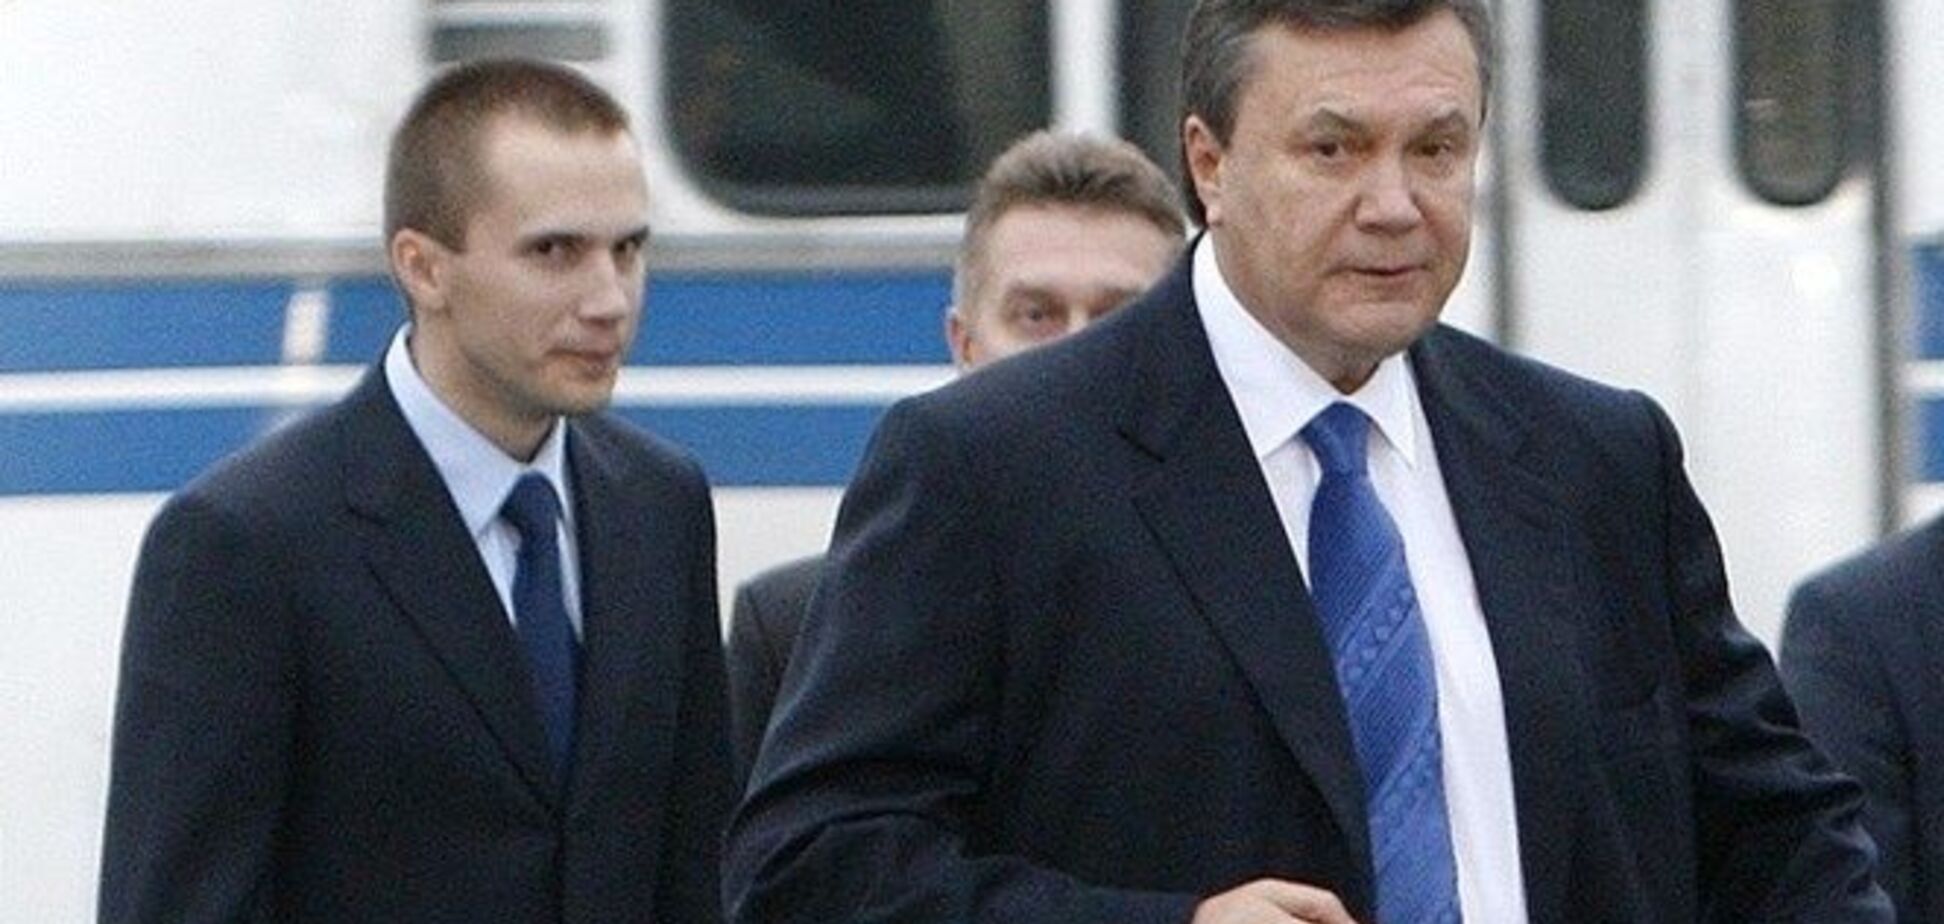 'Міцно кукуха поїхала': автор хітів Пугачової розсмішив одою Януковичу